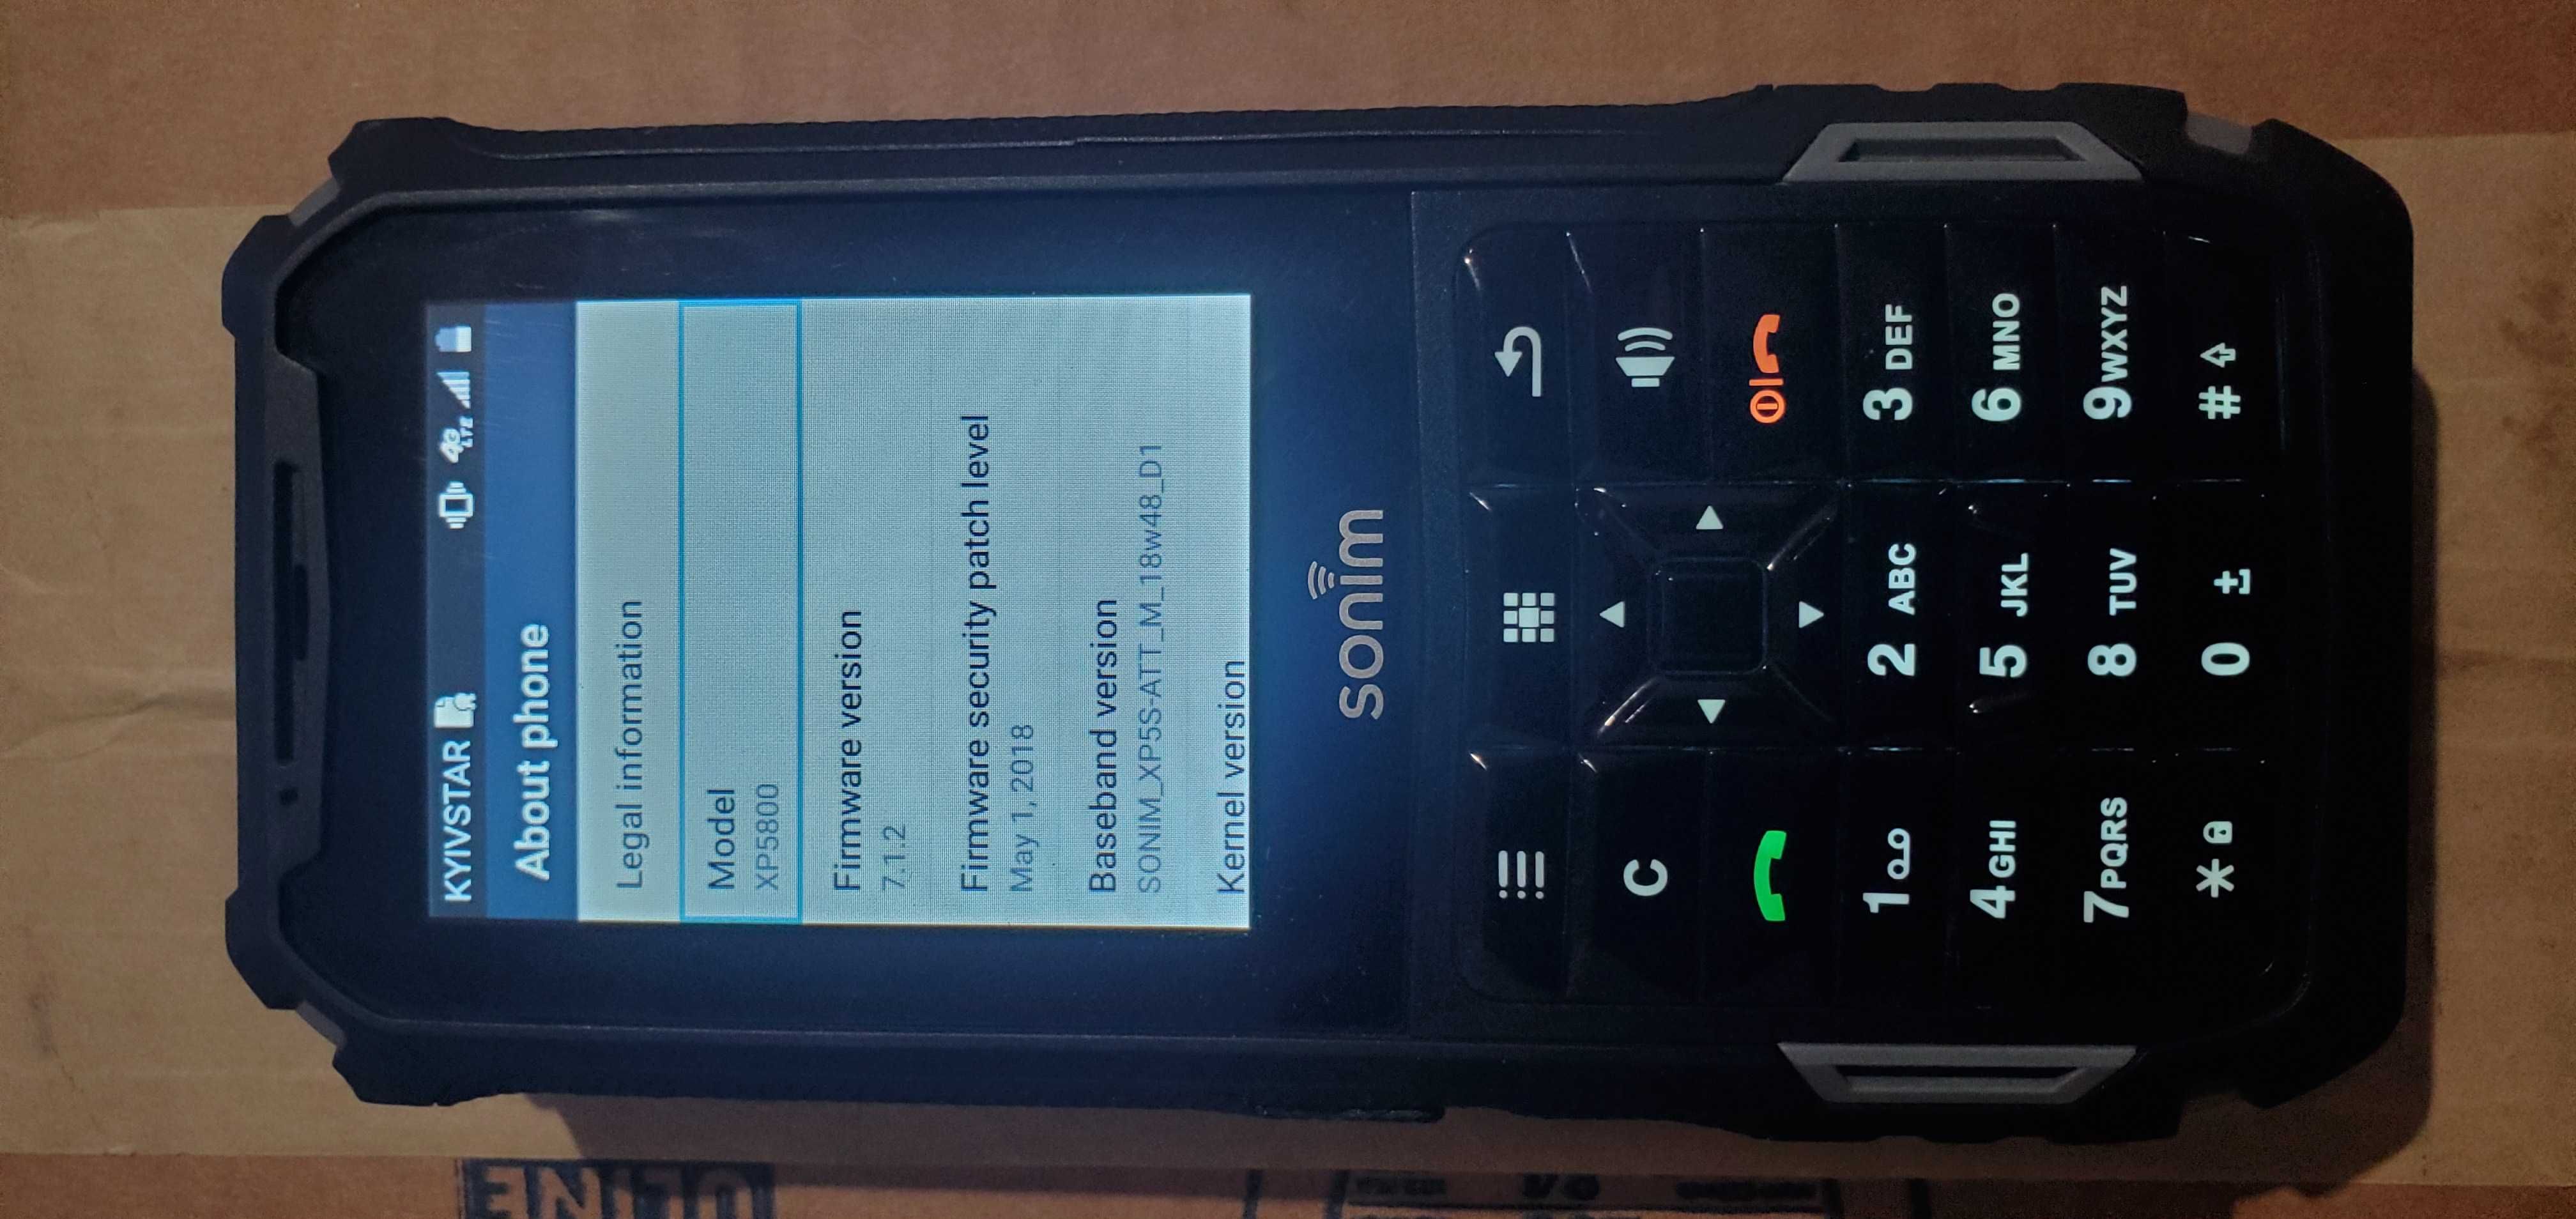 Захищений телефон Sonim XP5S XP5800, 2СІМ, 4G, мова англ.